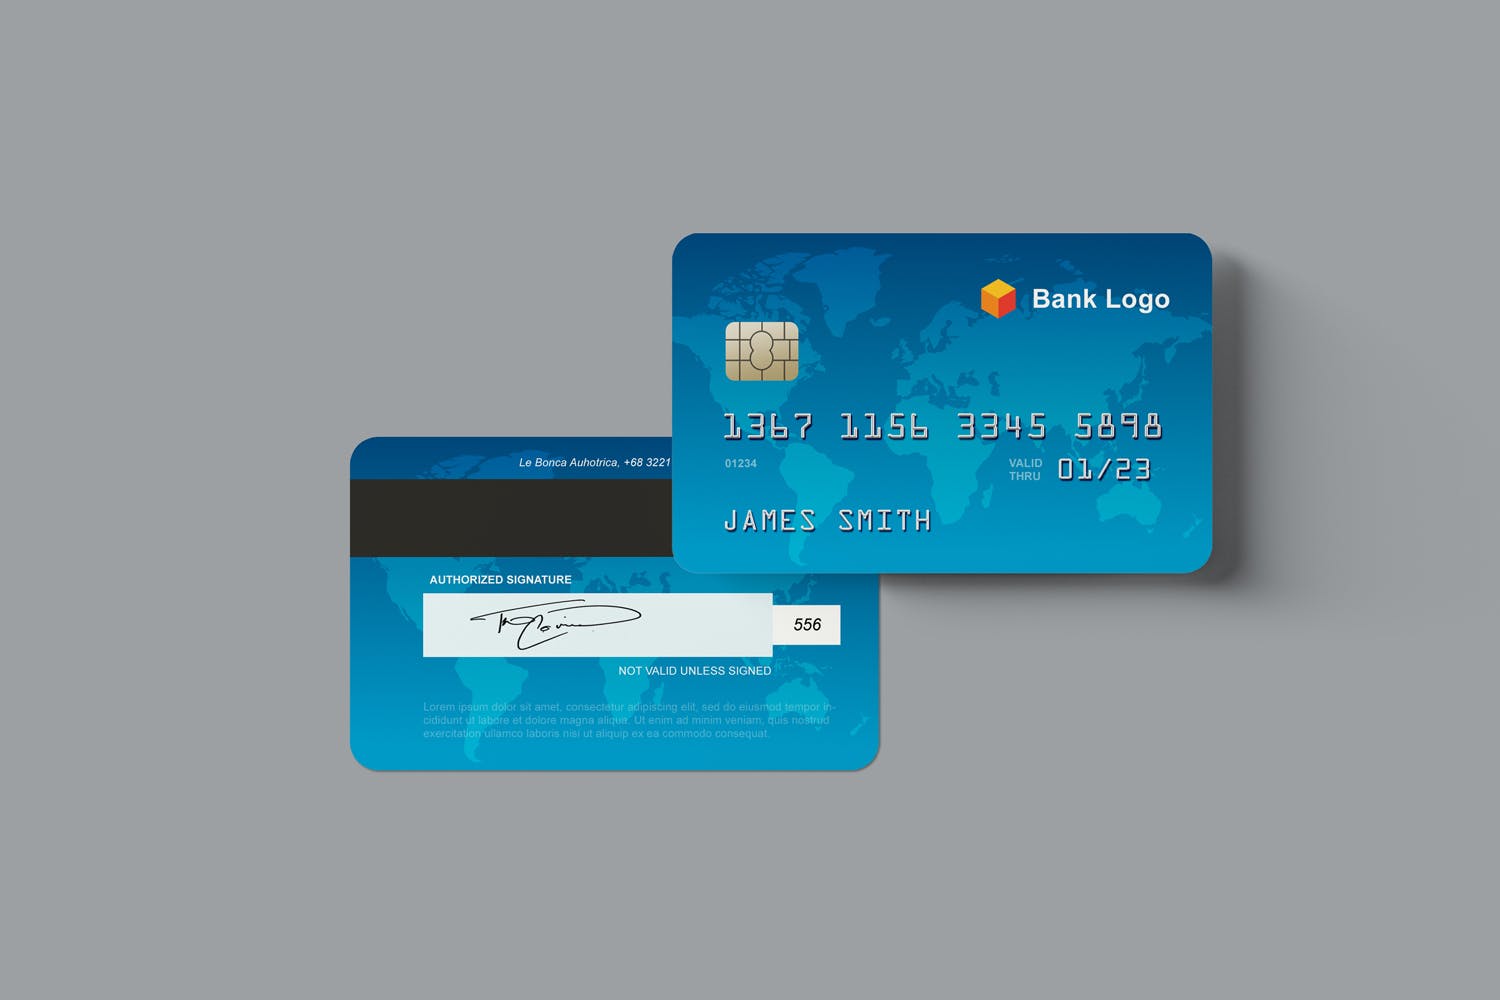 银行卡/信用卡正面设计效果图样机 Credit Card Mockups插图(3)